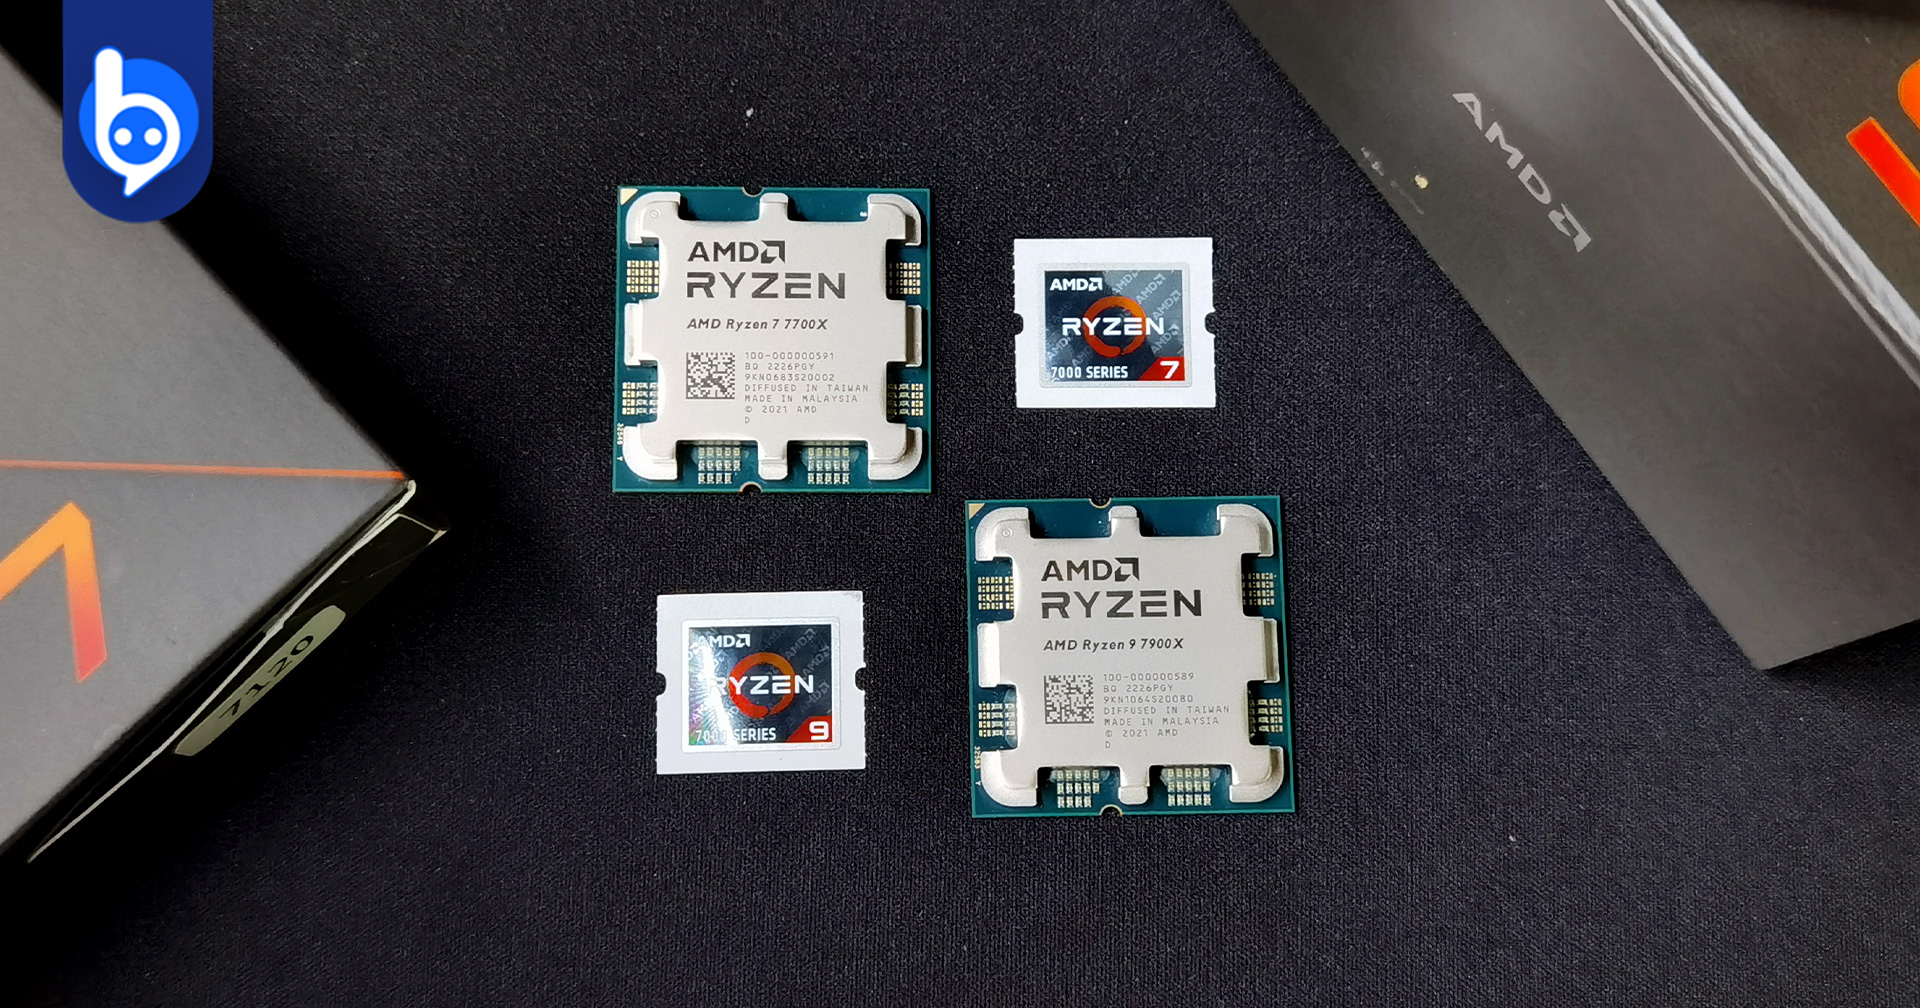 สรุปผลเทสต์ AMD Ryzen 7 7700X + Ryzen 9 7900X หมัดเด็ดค่ายแดง แรงแซงเพื่อน!